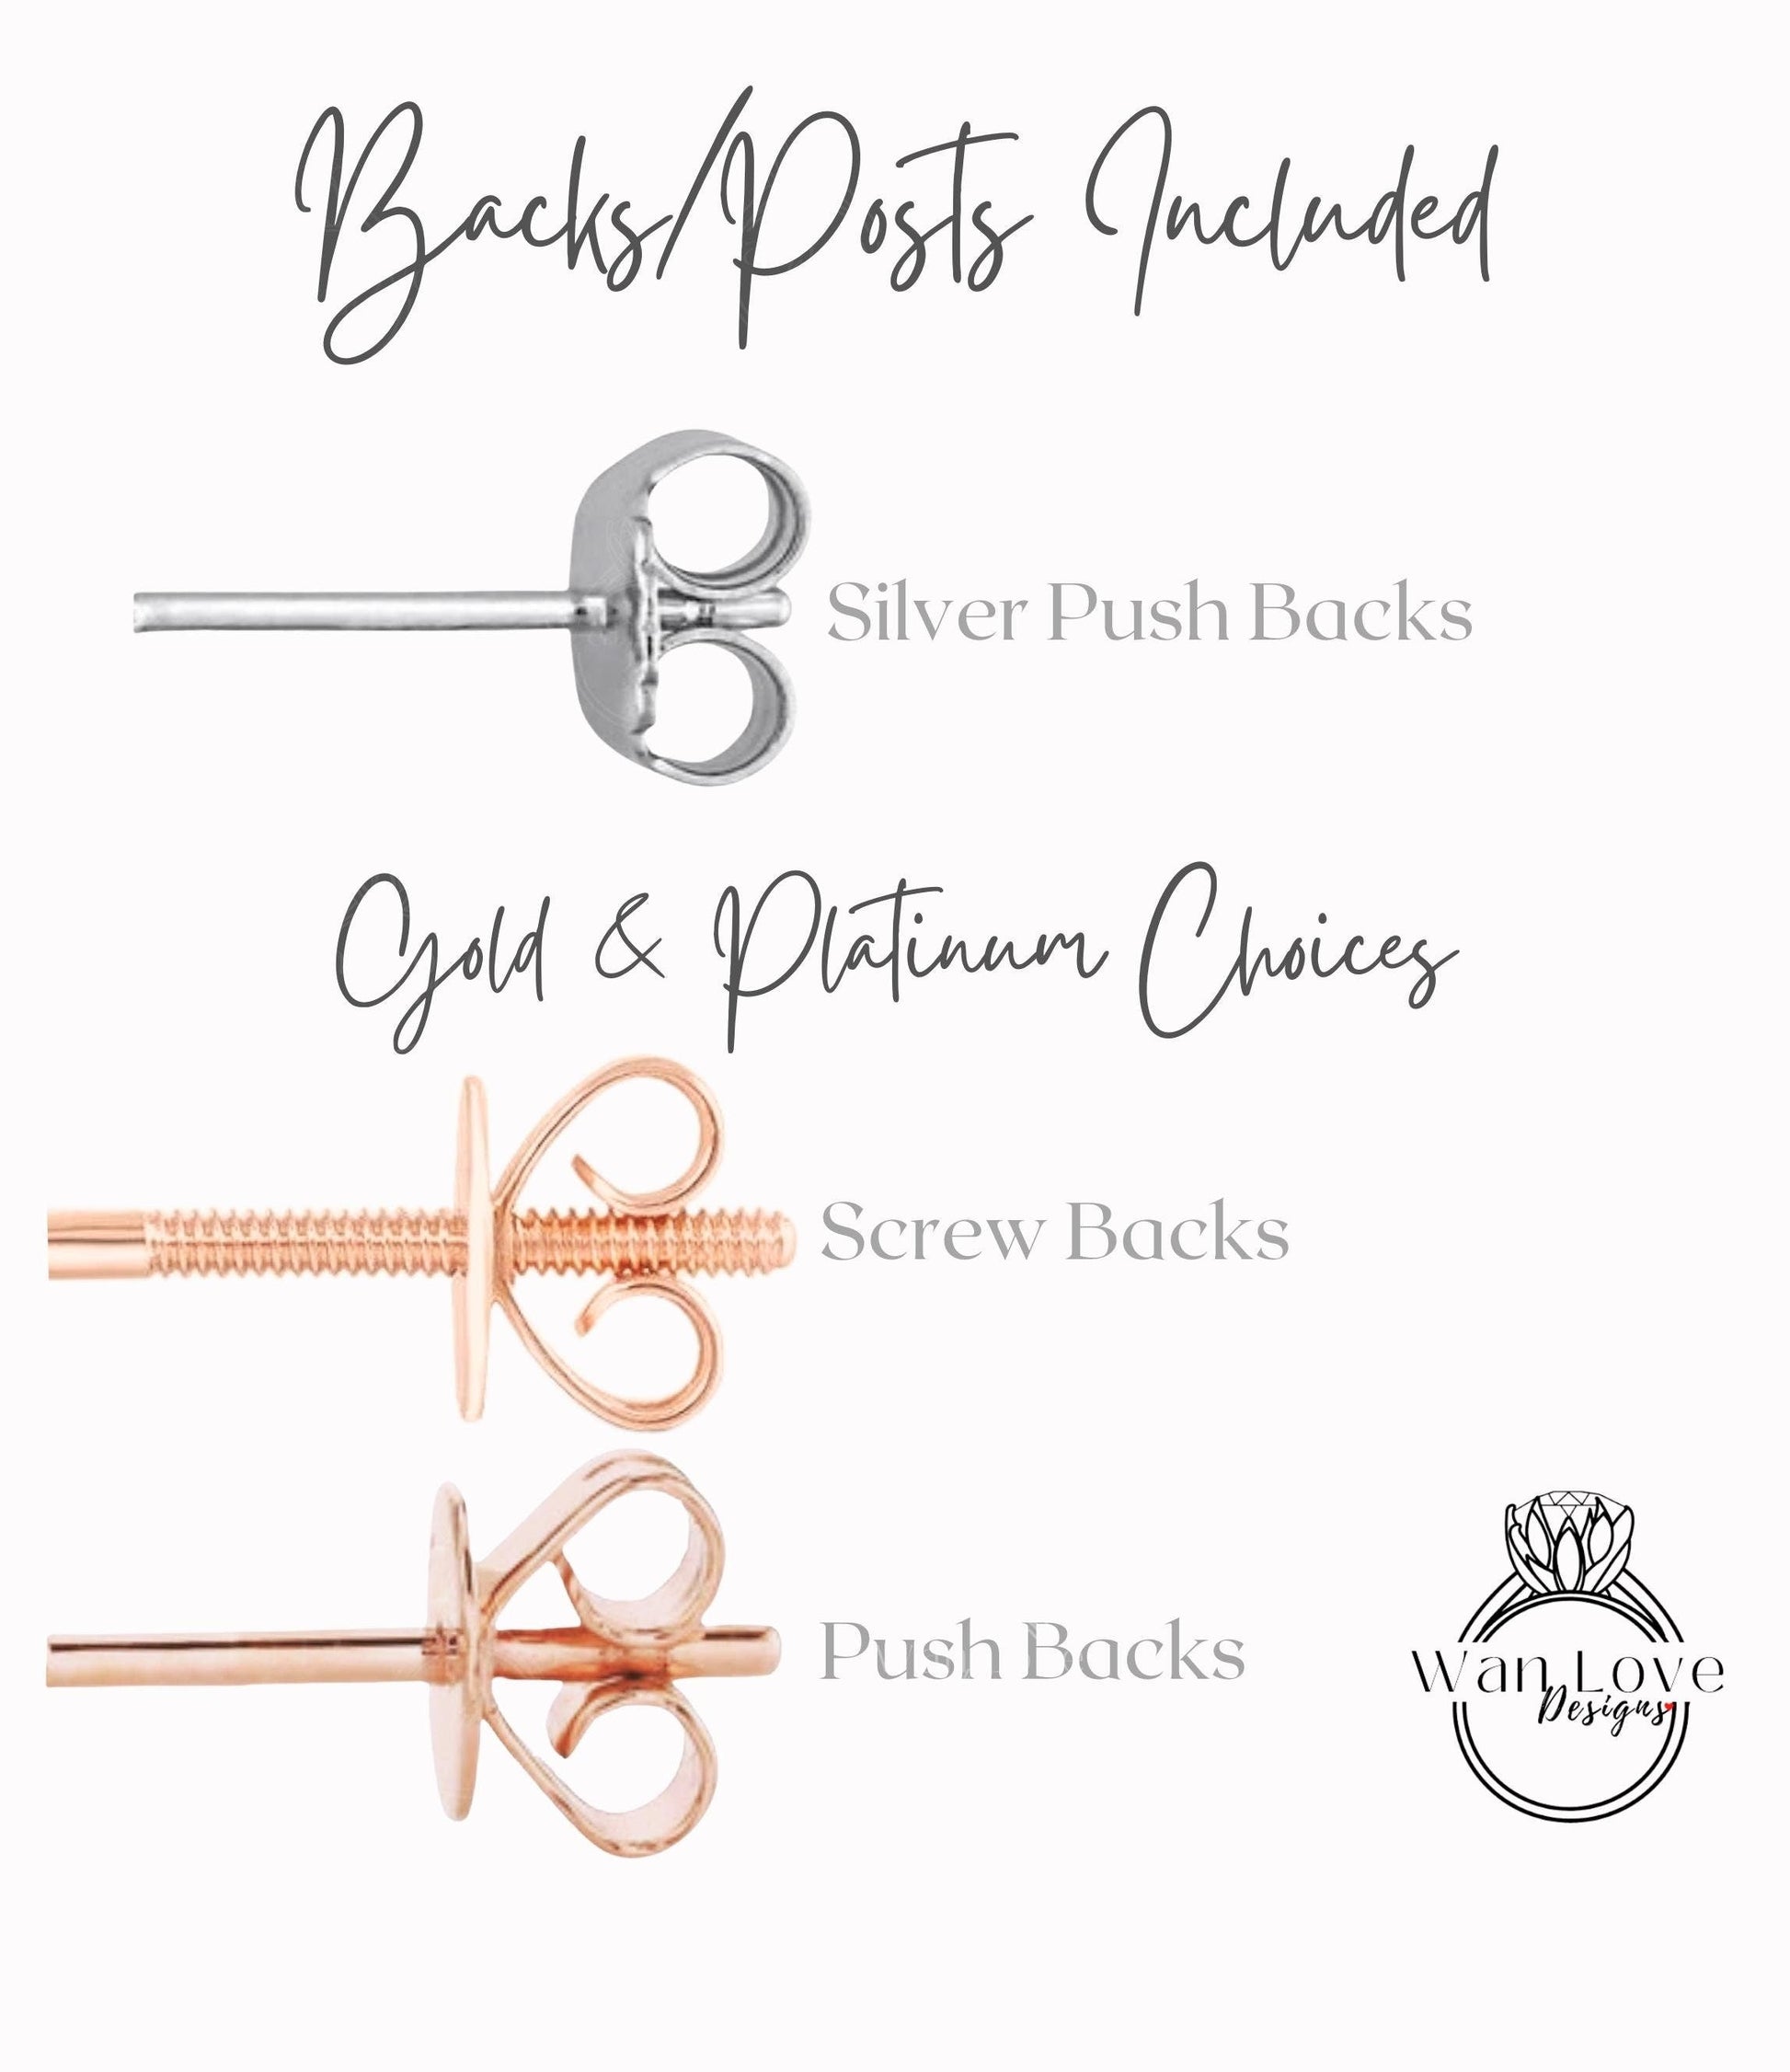 2ct Pear Diamond Halo Earrings • Dainty Pear Moissanite Stud Earrings • Perfect Wedding Earrings • Minimalist Earrings • Gift for Her Wan Love Designs